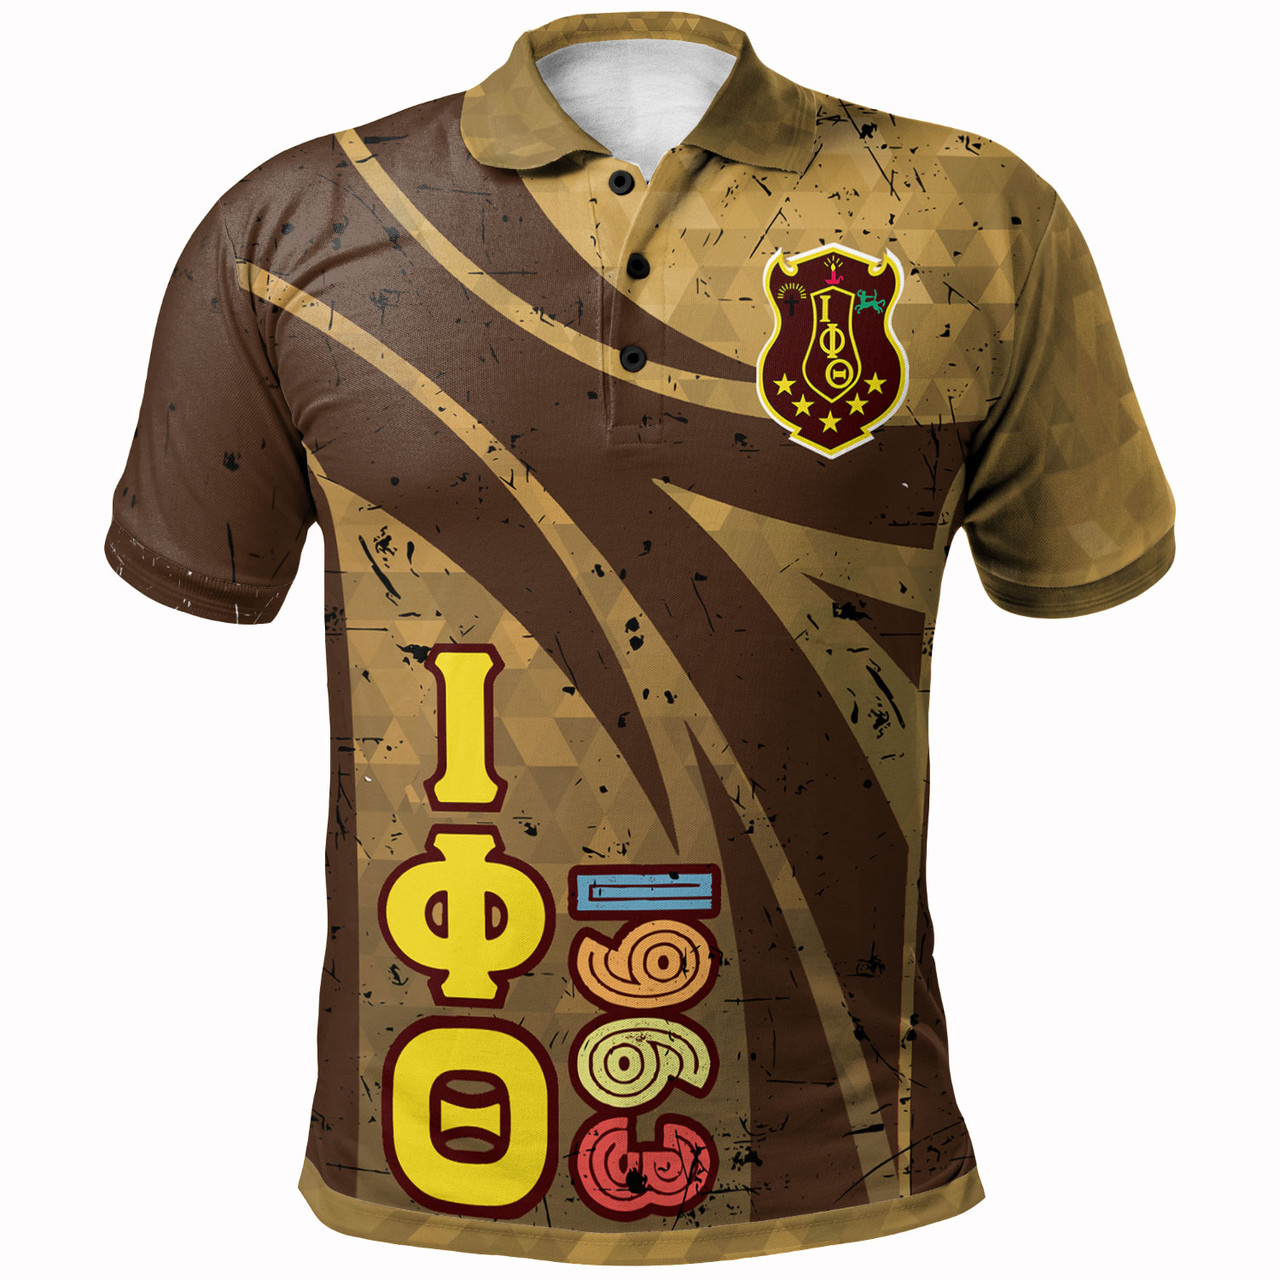 Iota Phi Theta Polo Shirt - Iota Phi Theta Fraternity 1963